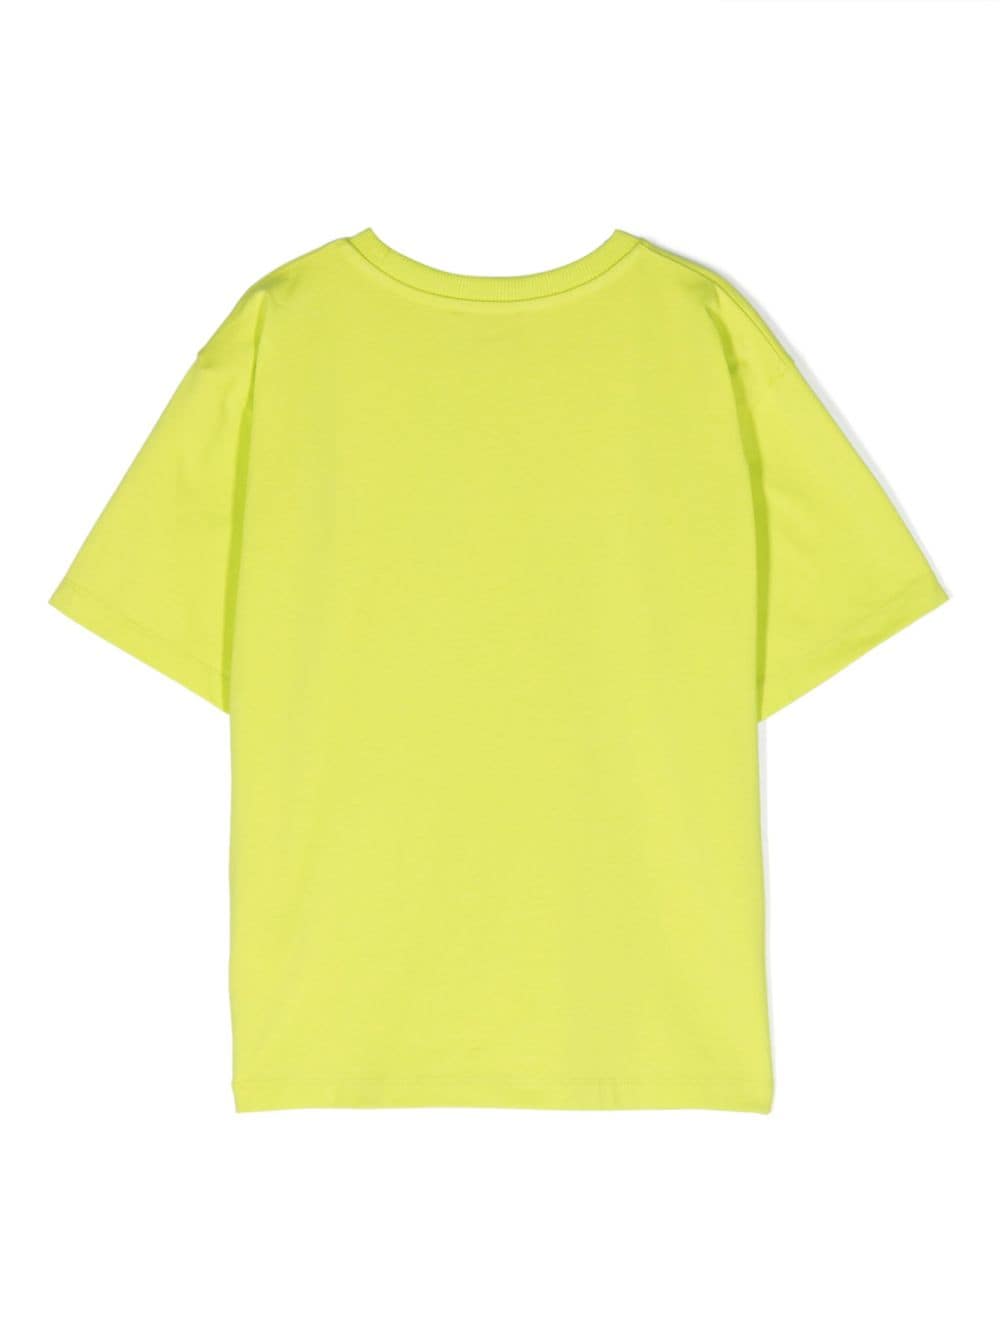 T-shirt fille citron vert/multicolore